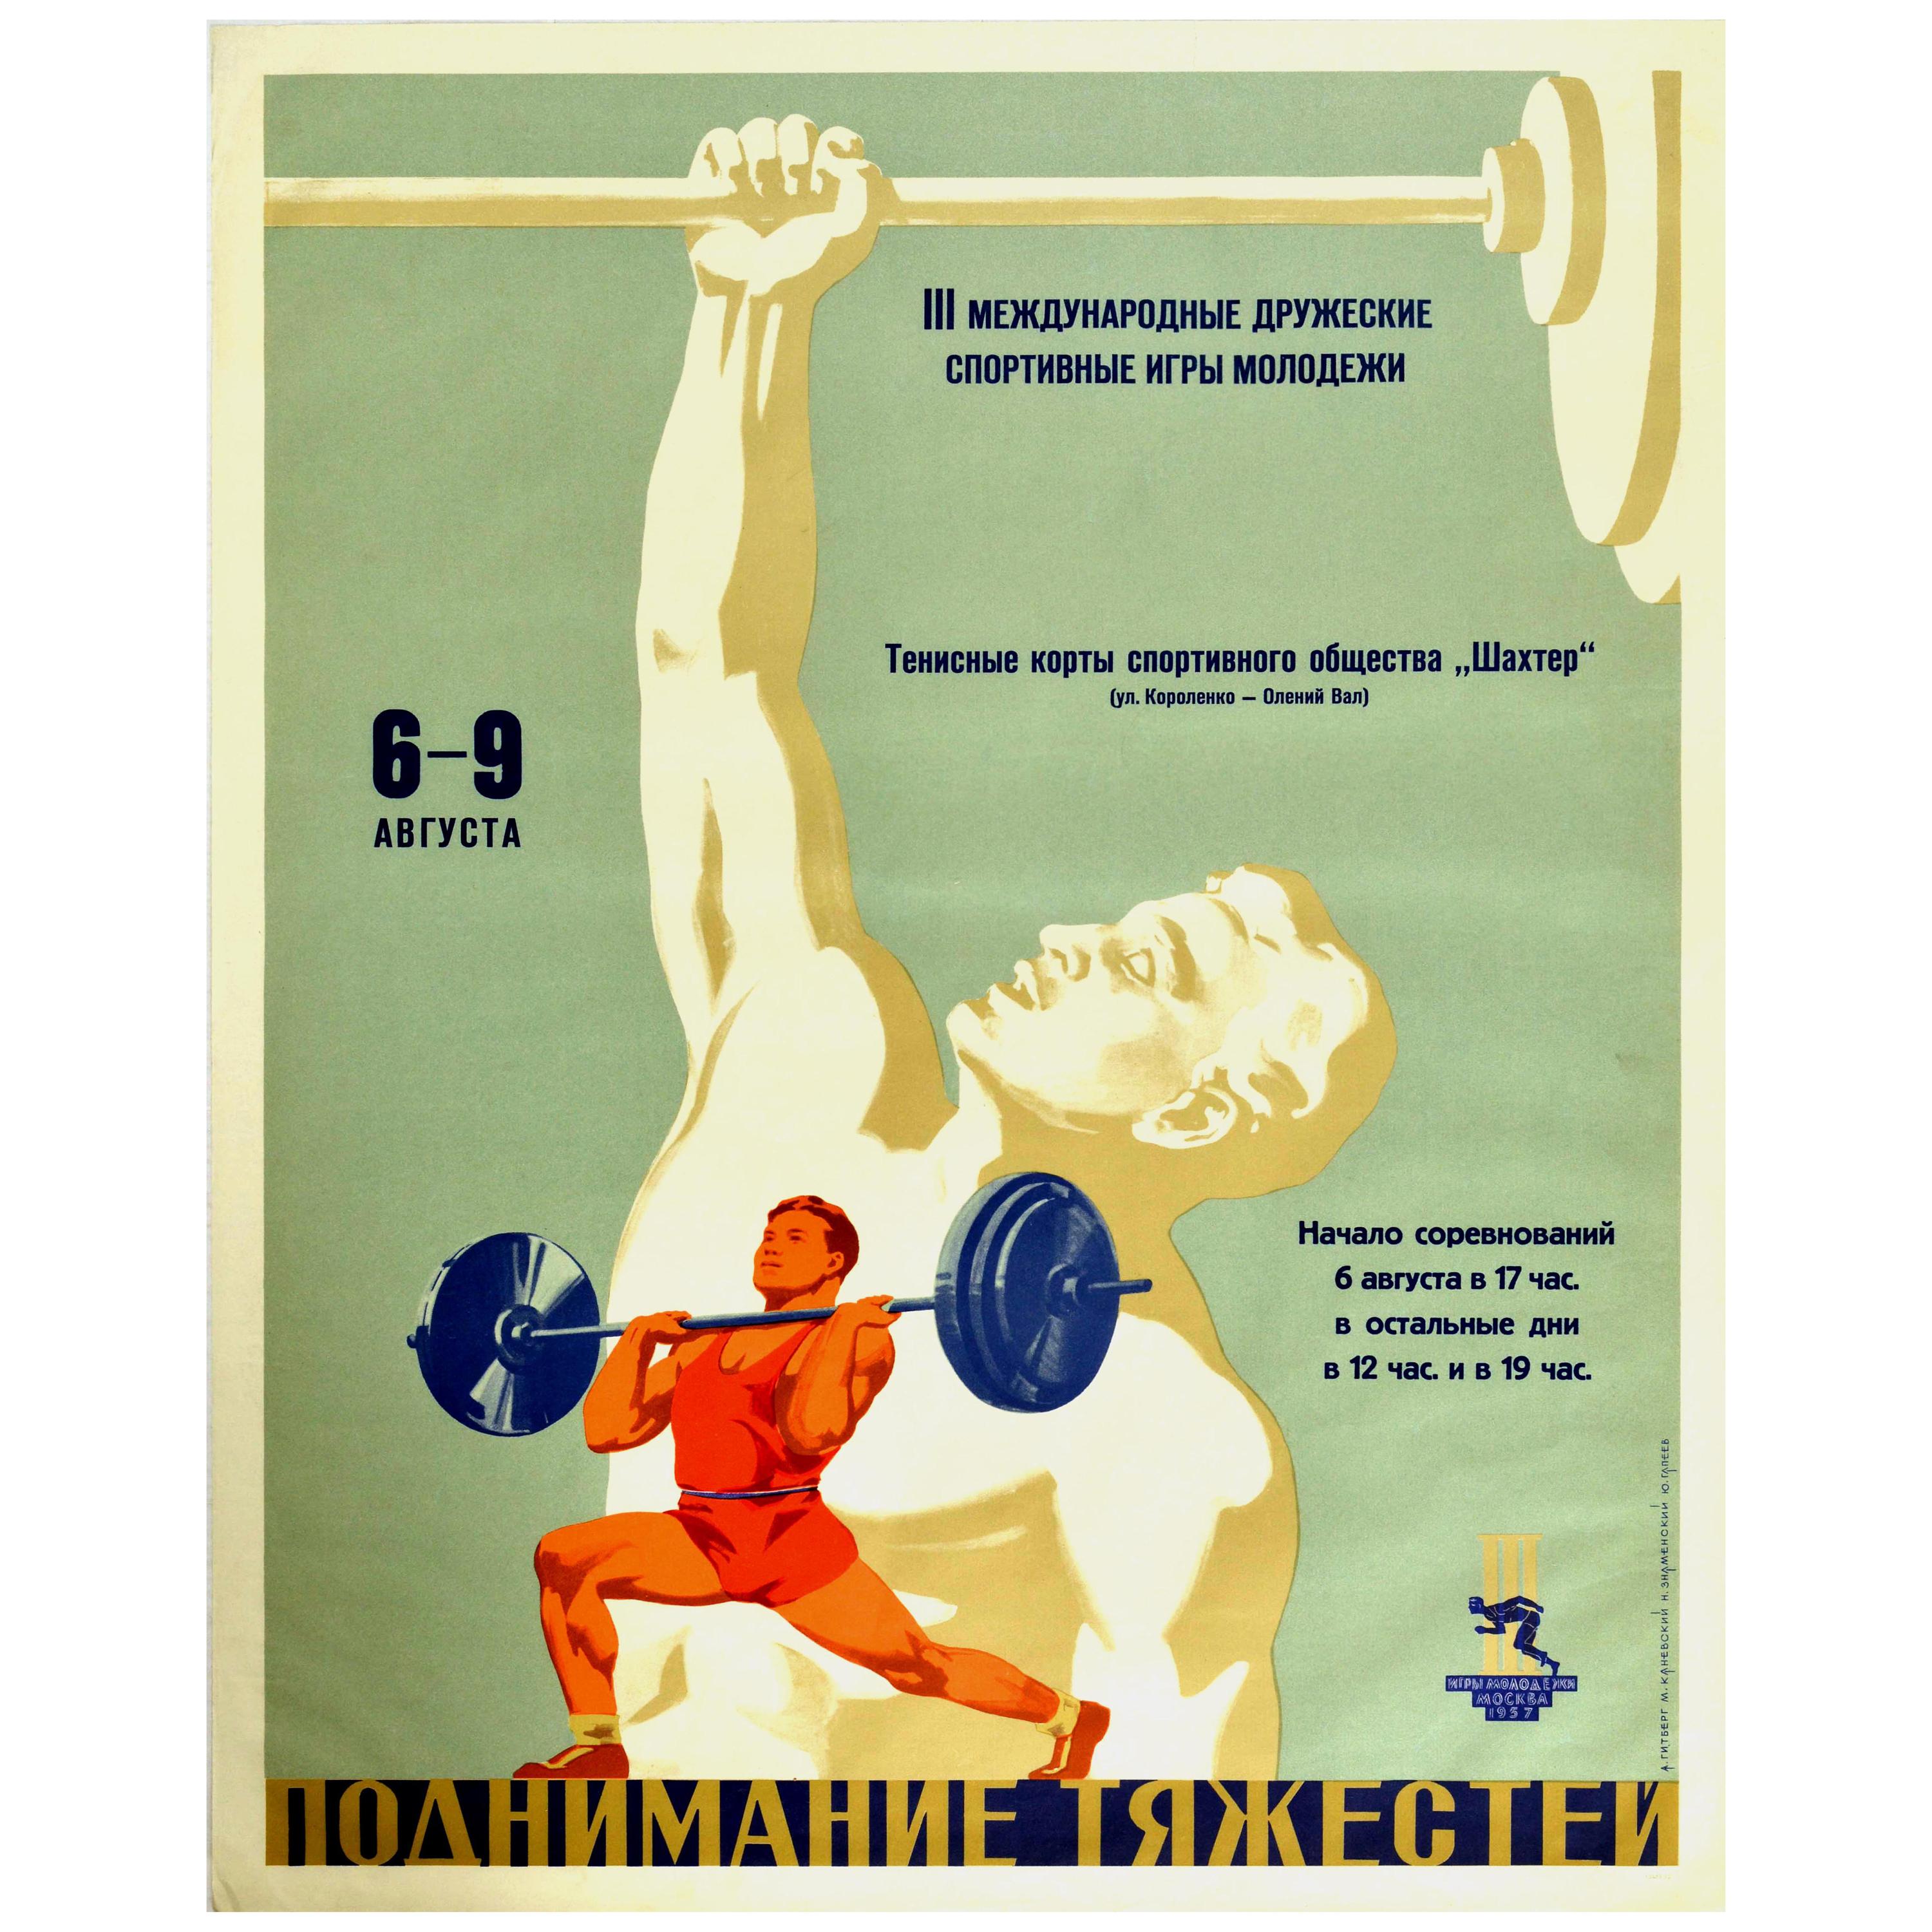 Affiche rétro originale pour les Jeux de poids, événement d'amitié et de sport entre les jeunes de Moscou